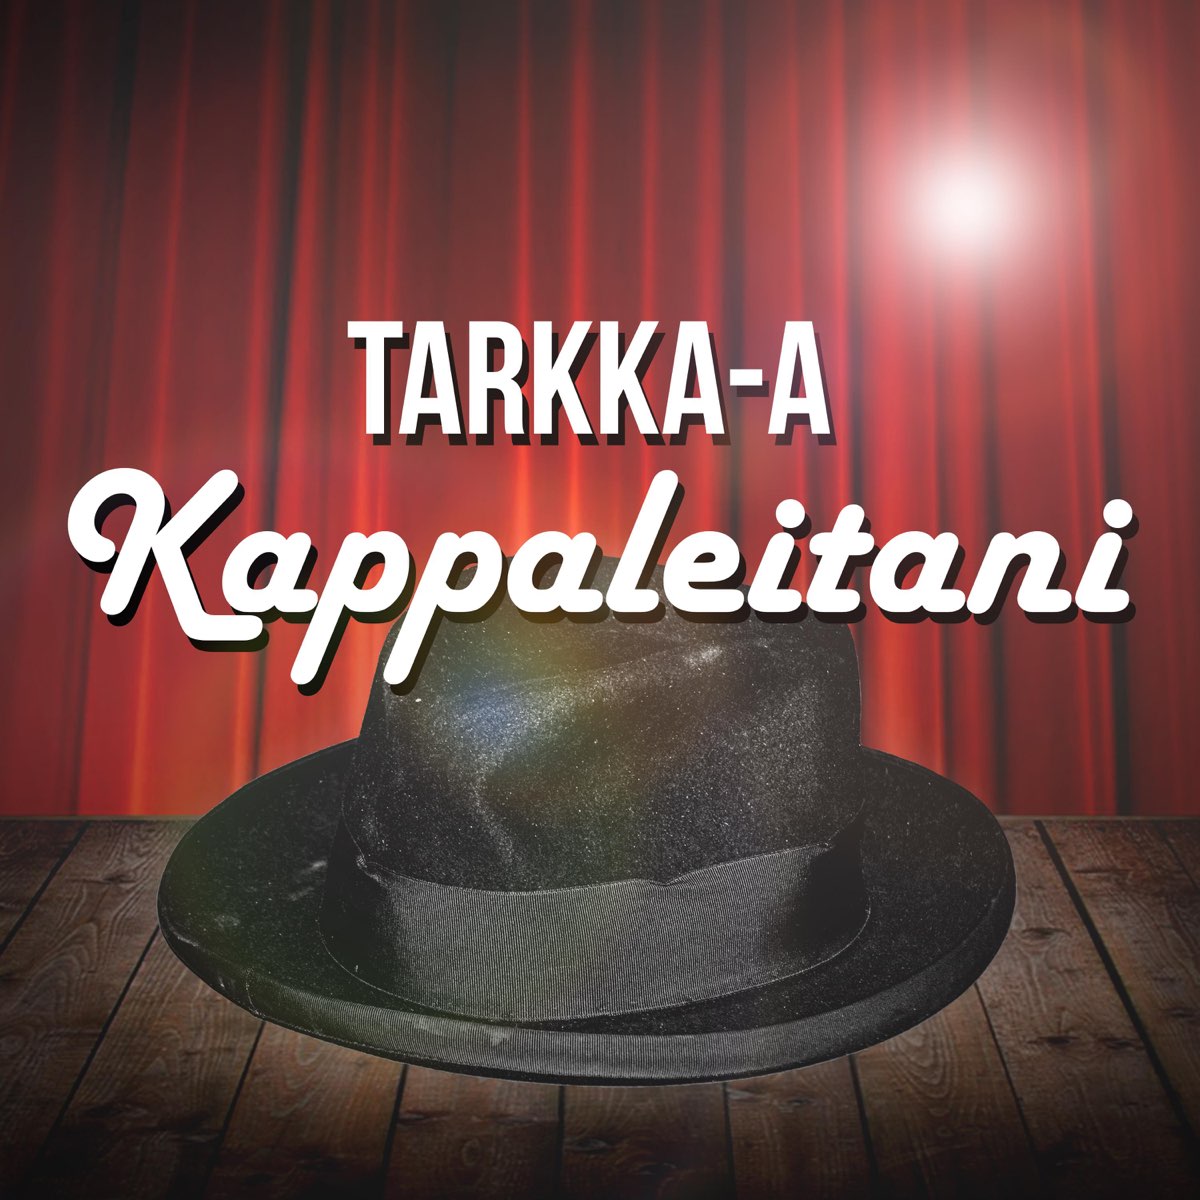 Kappaleitani - Single - Album by Tarkka-a - Apple Music